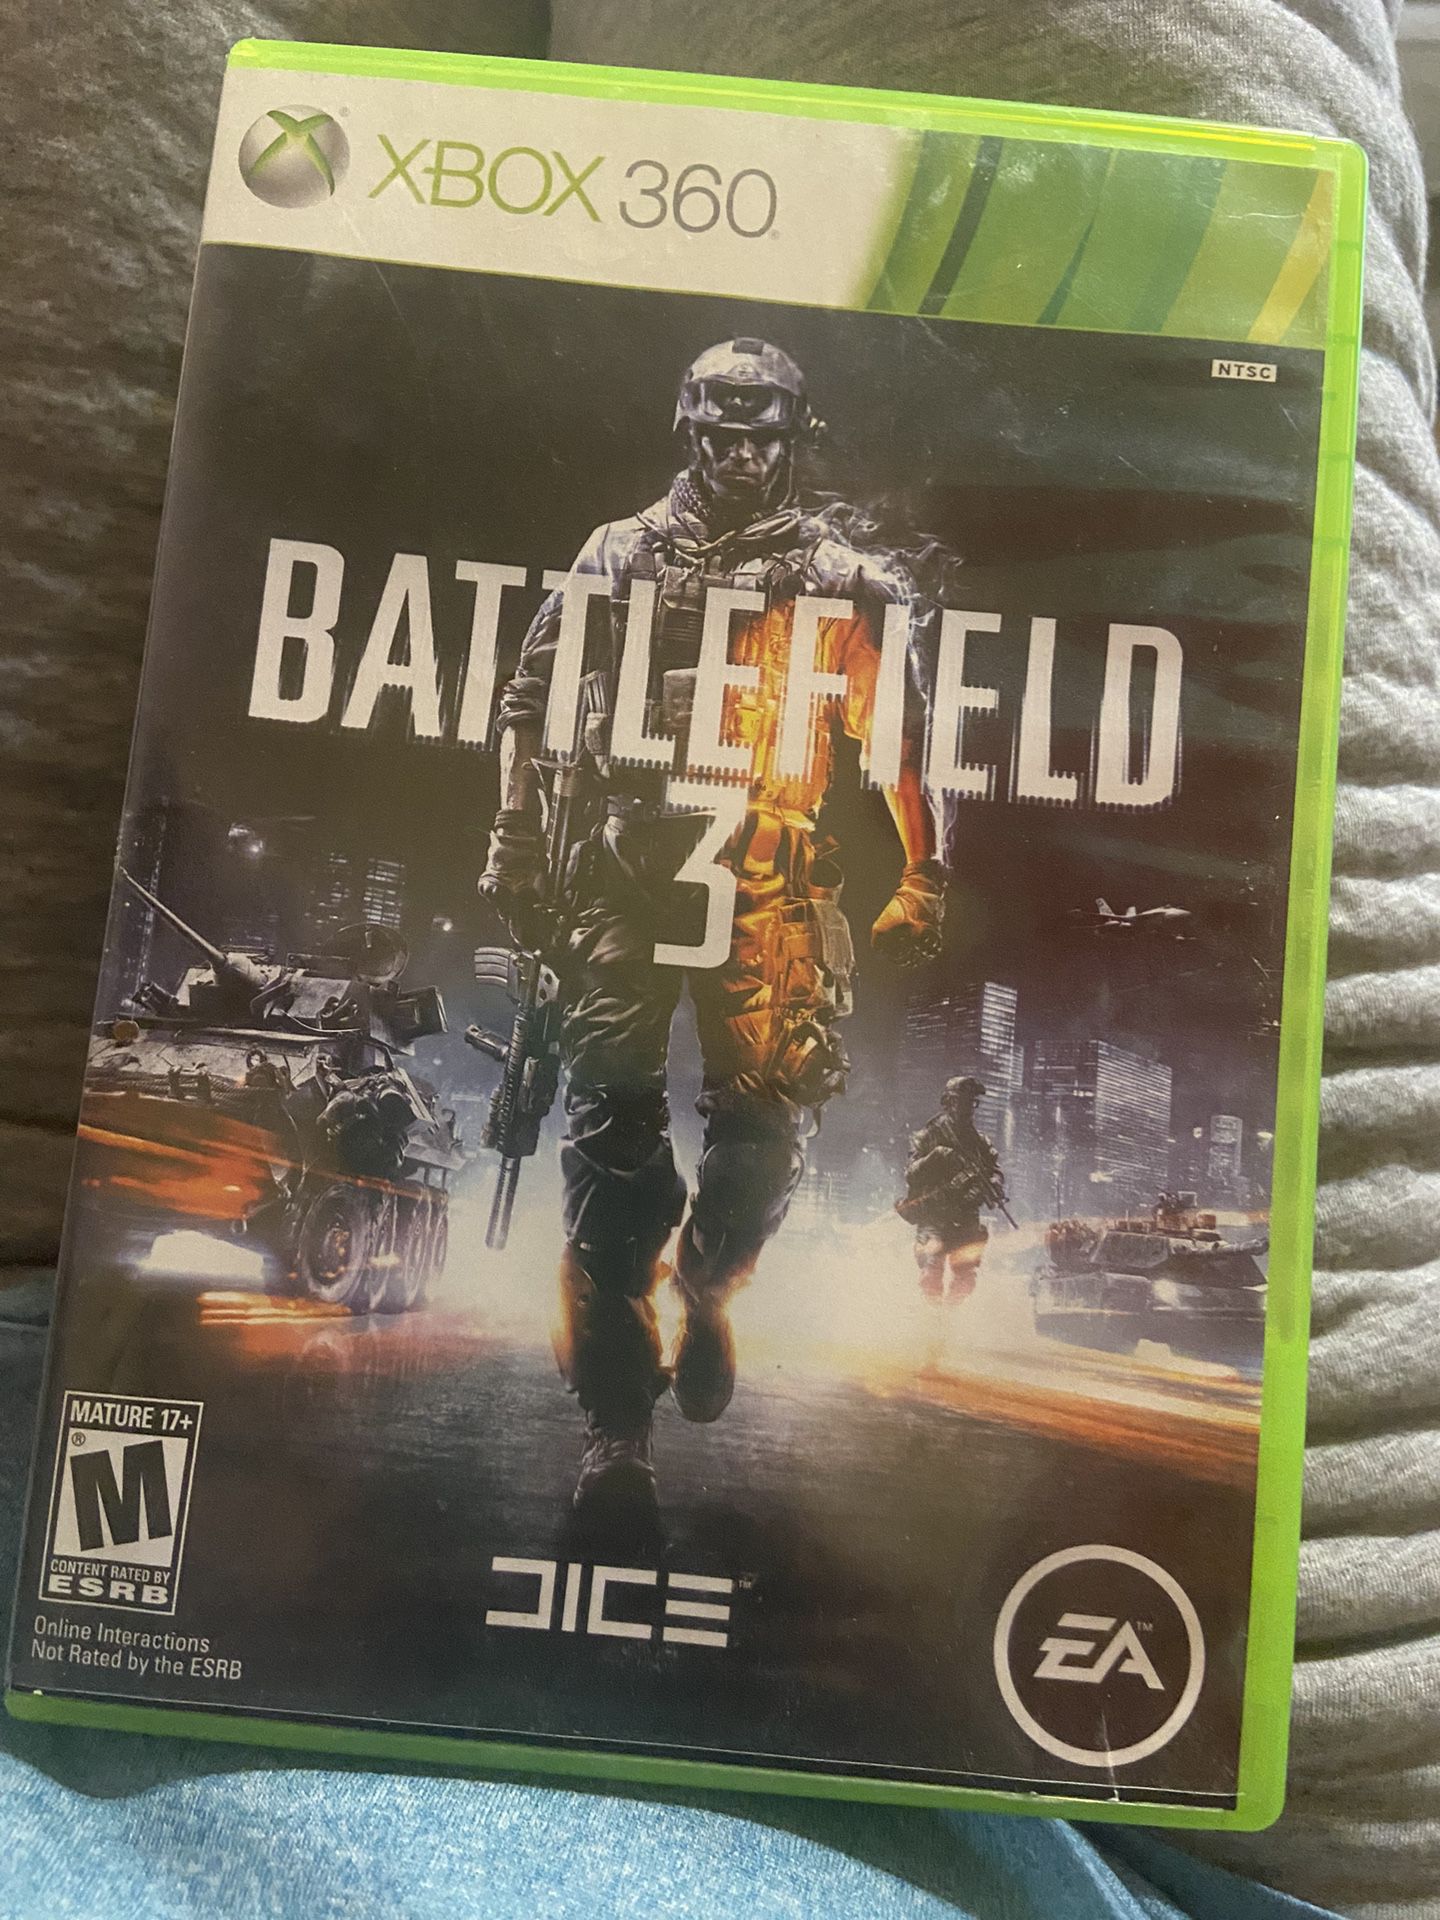 Battlefield 3 Xbox 360 Game 